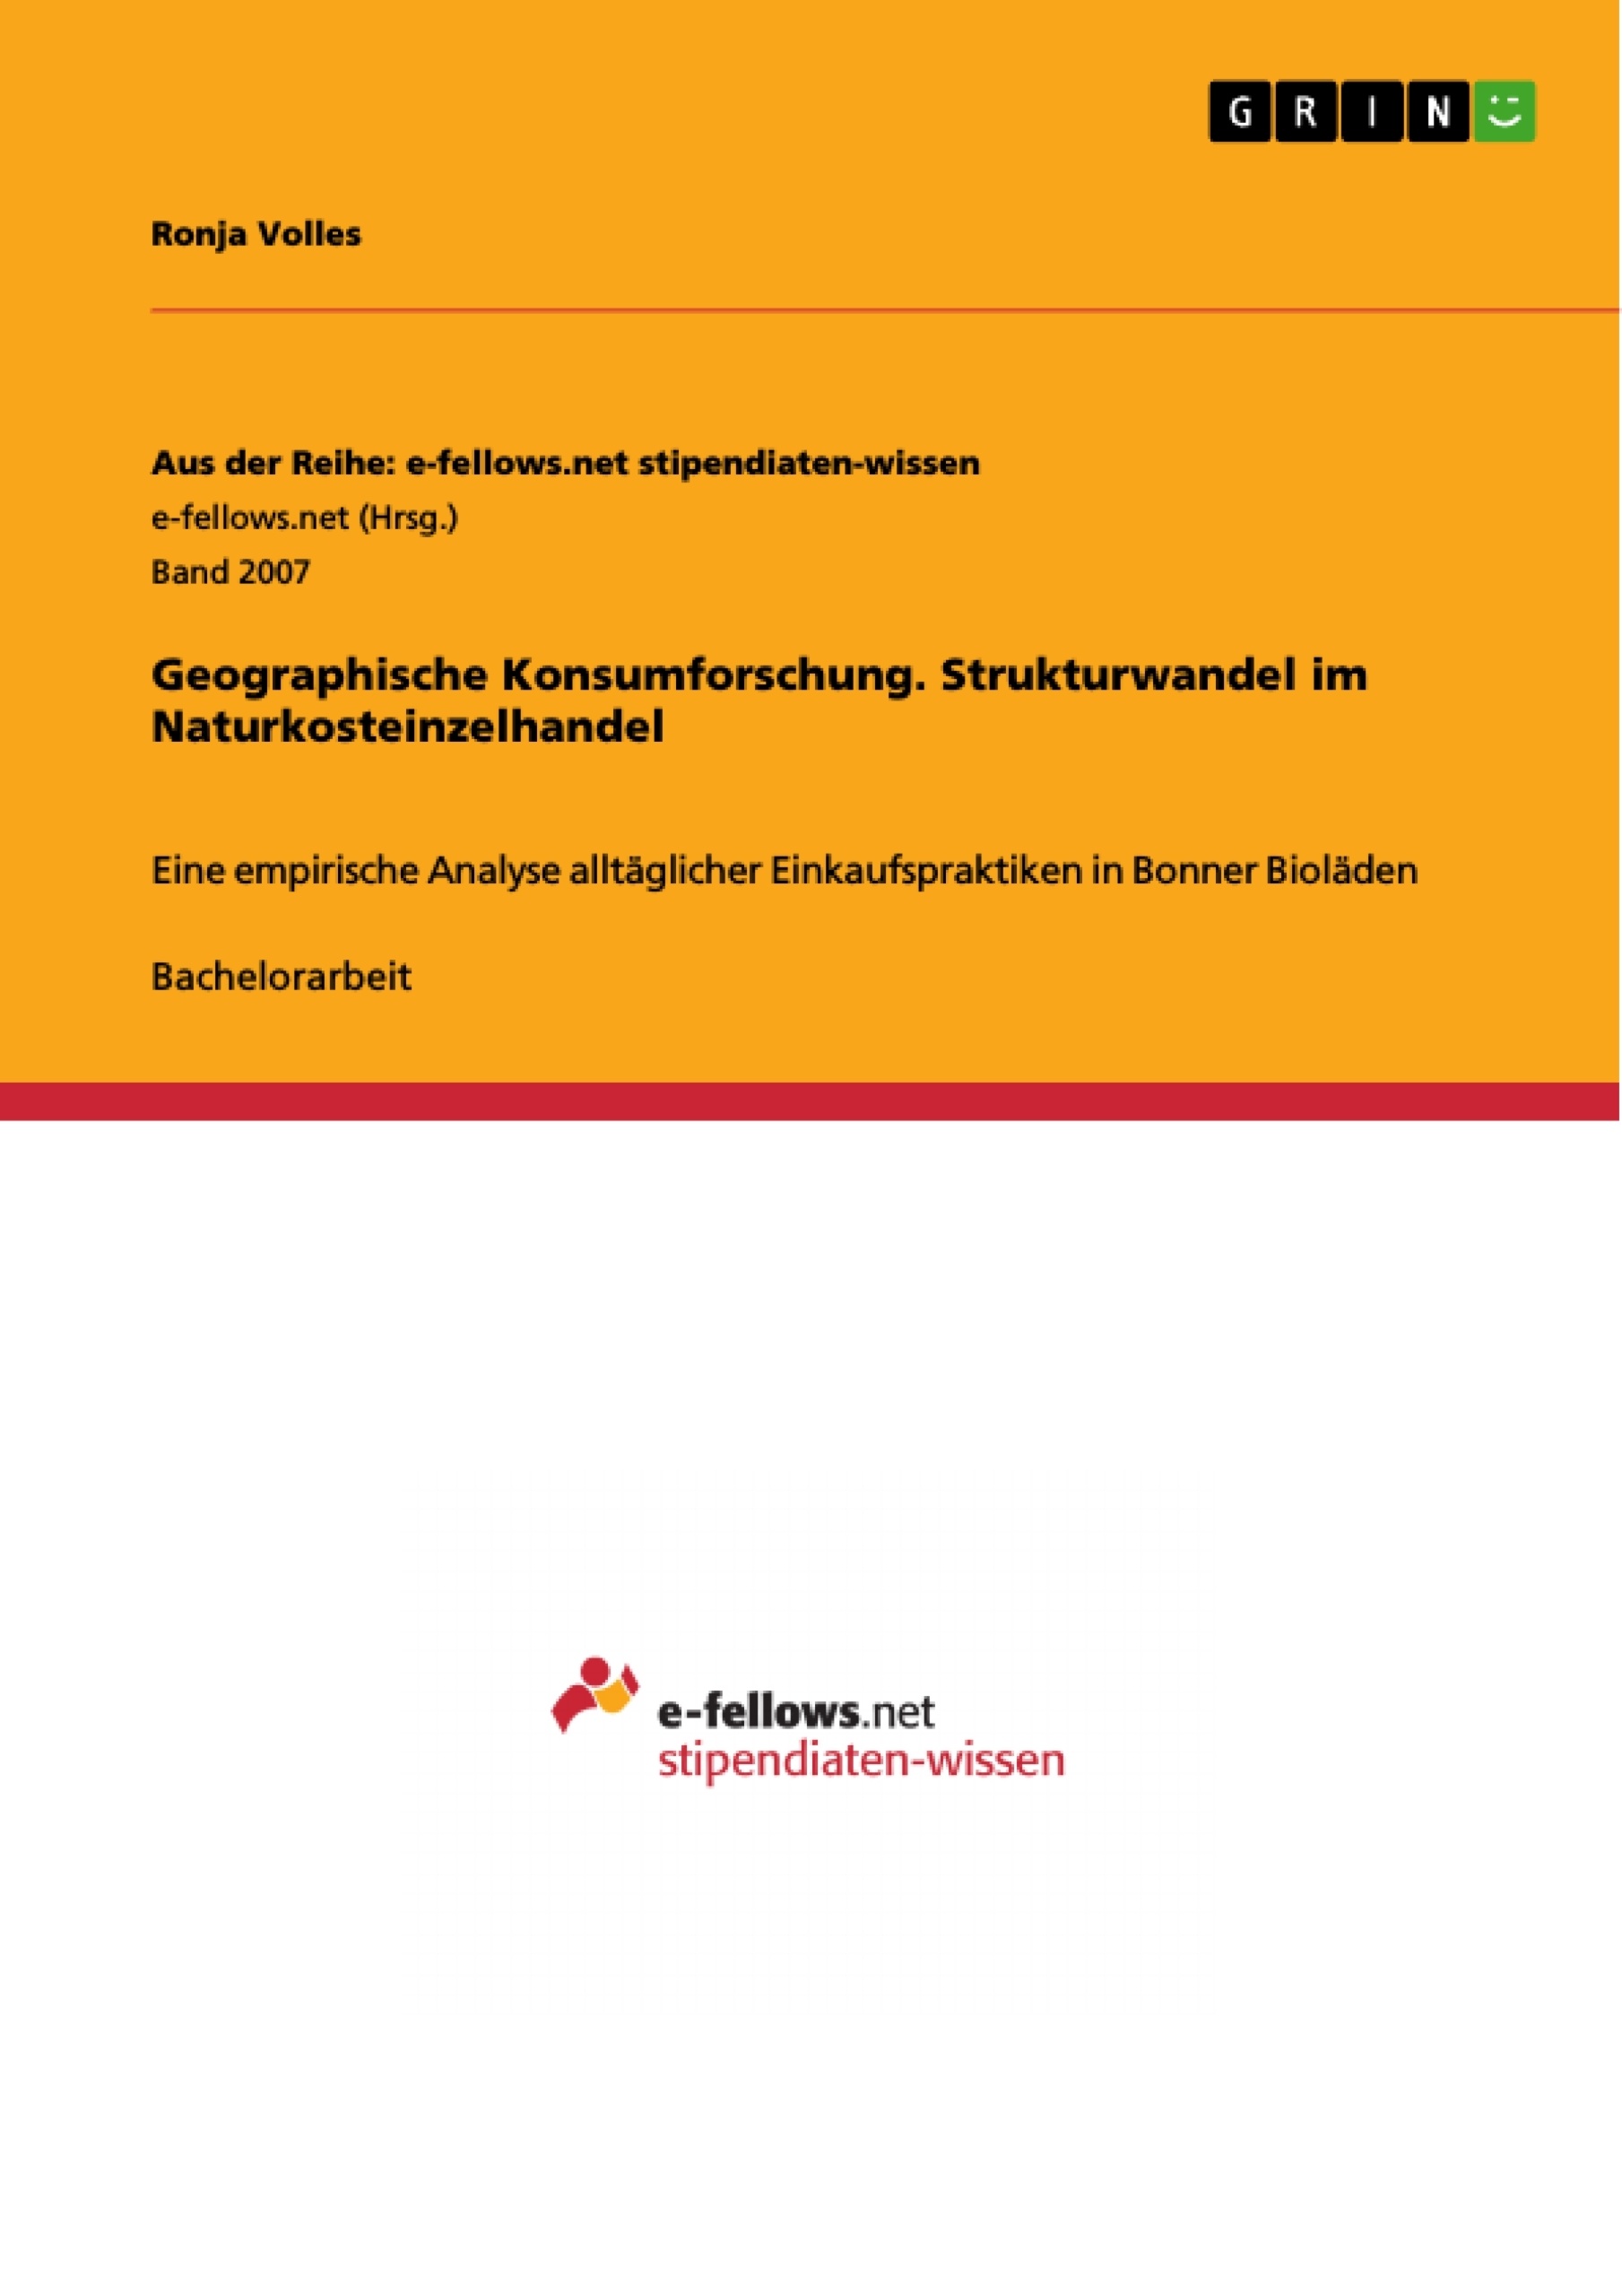 Title: Geographische Konsumforschung. Strukturwandel im Naturkosteinzelhandel